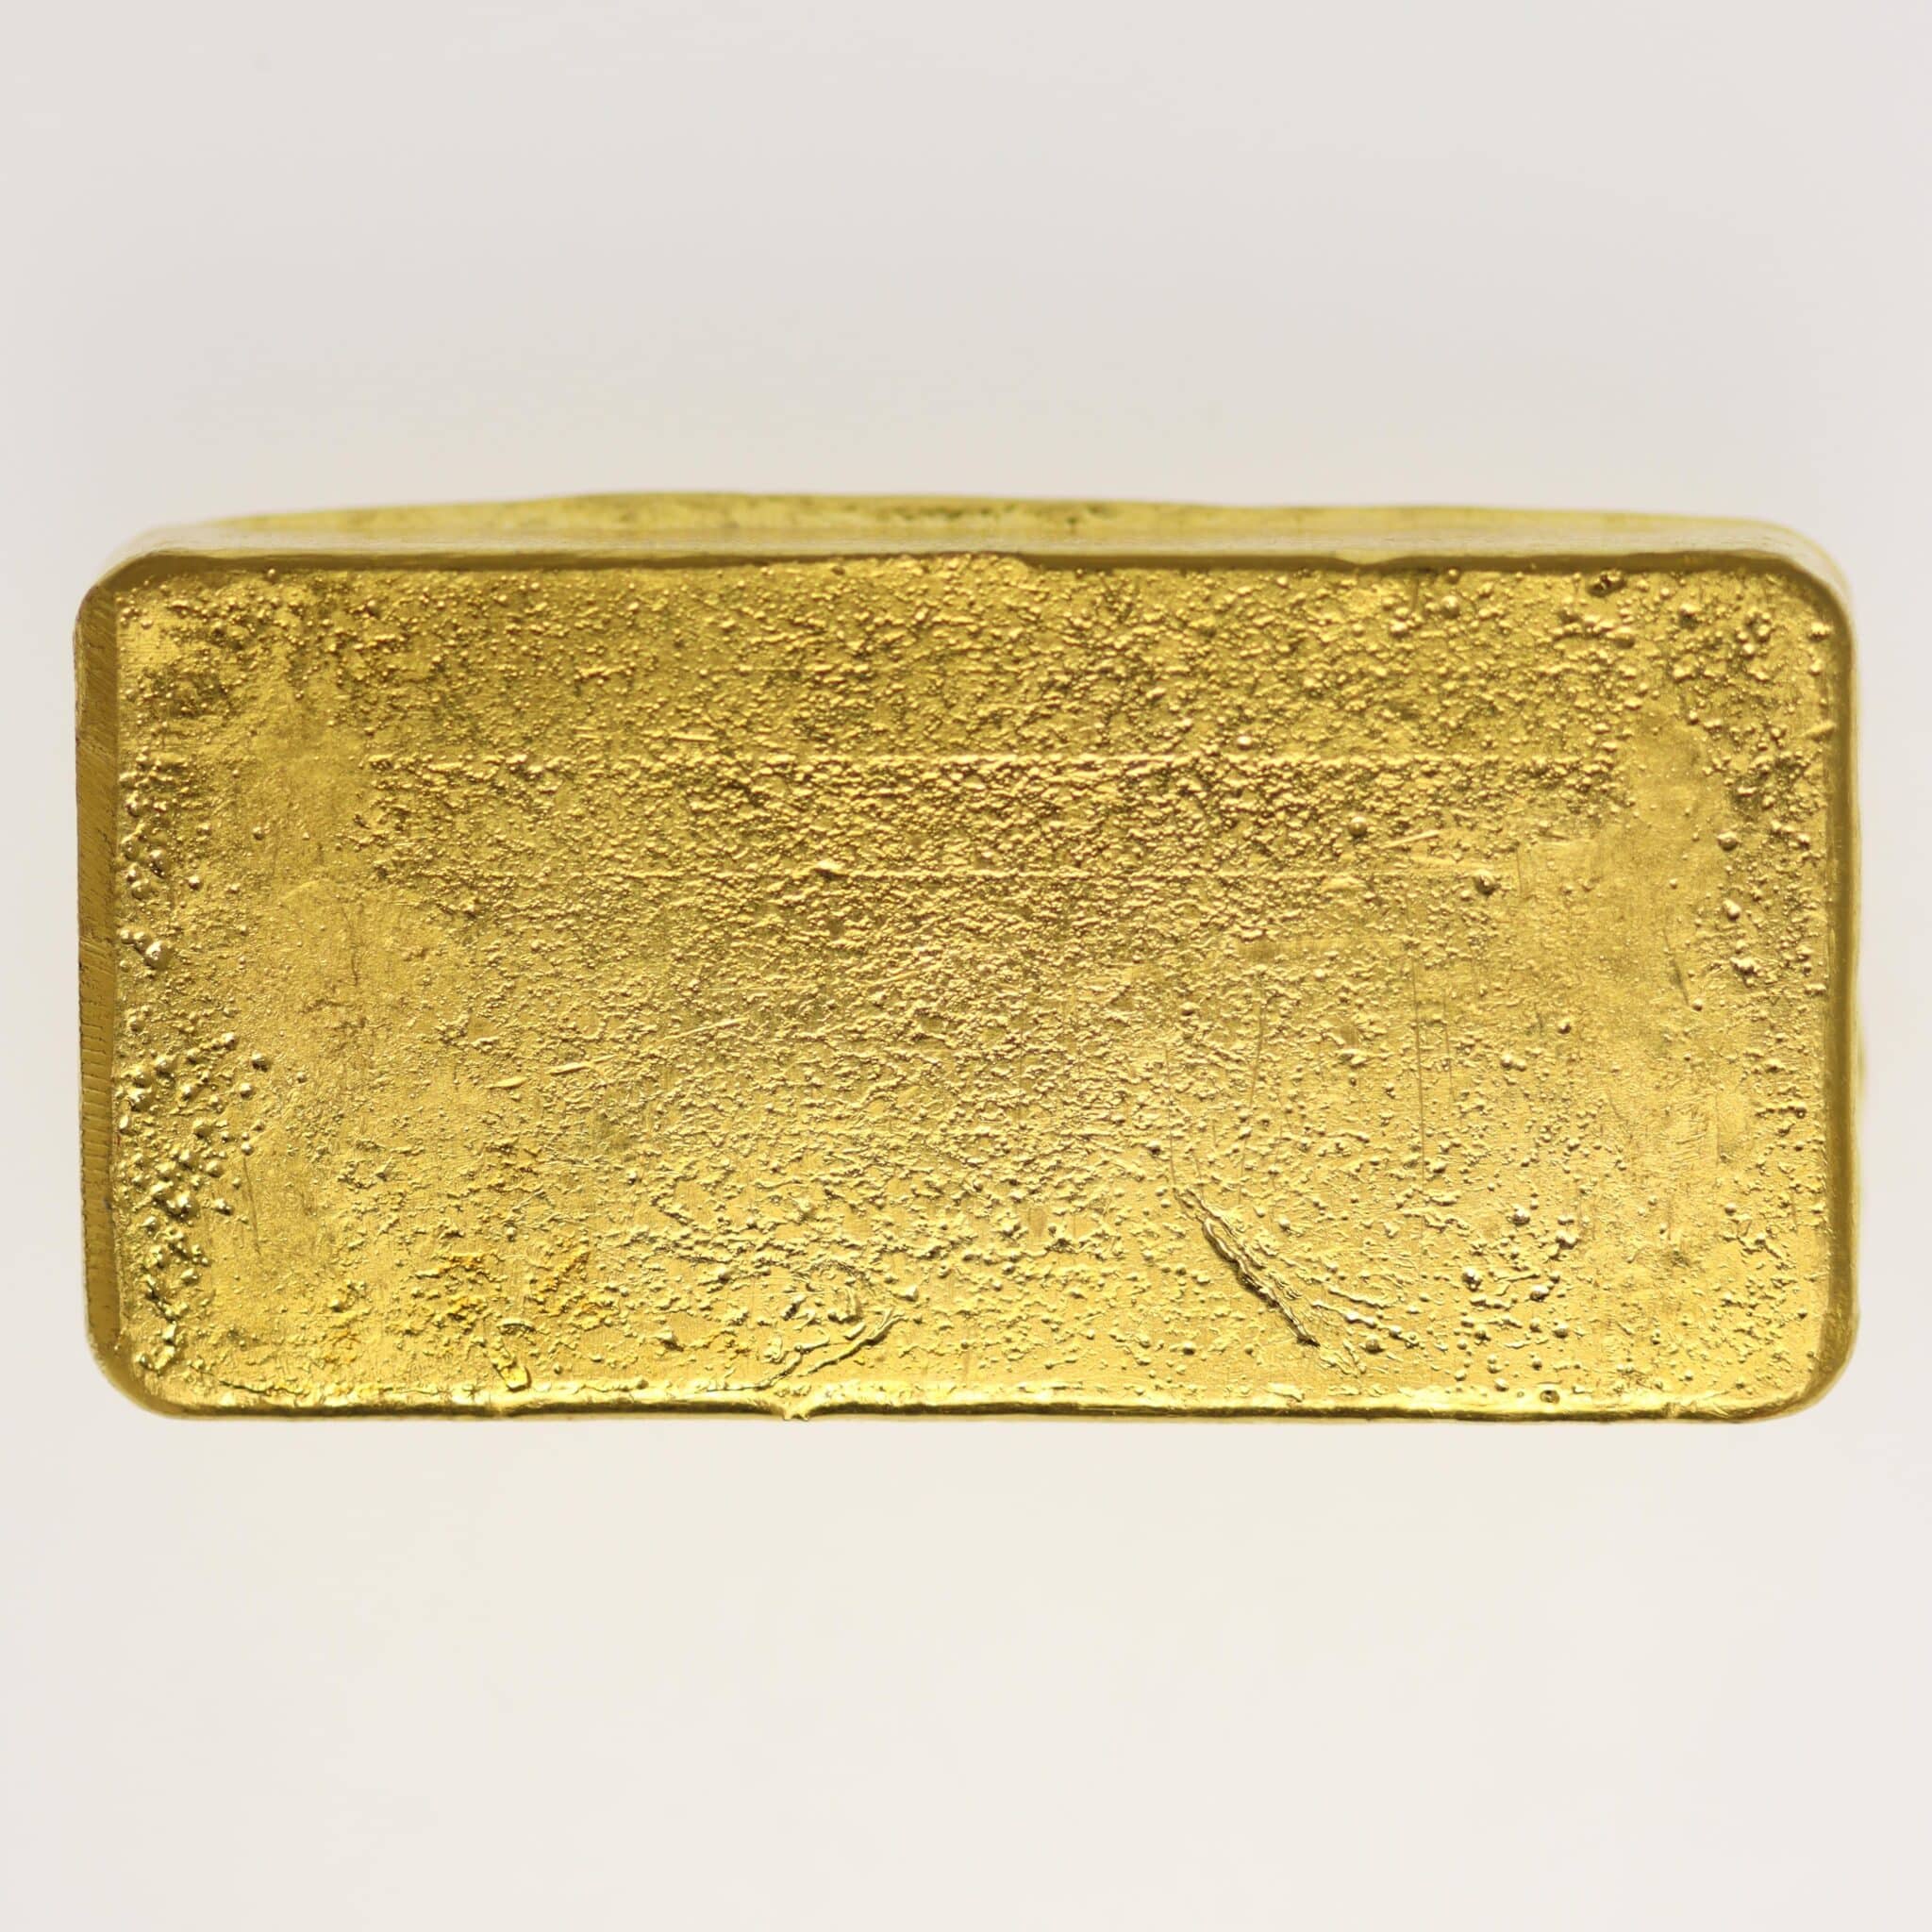 goldbarren - Goldbarren 250 Gramm Schweiz S.B.S. Societe de Banque Suisse